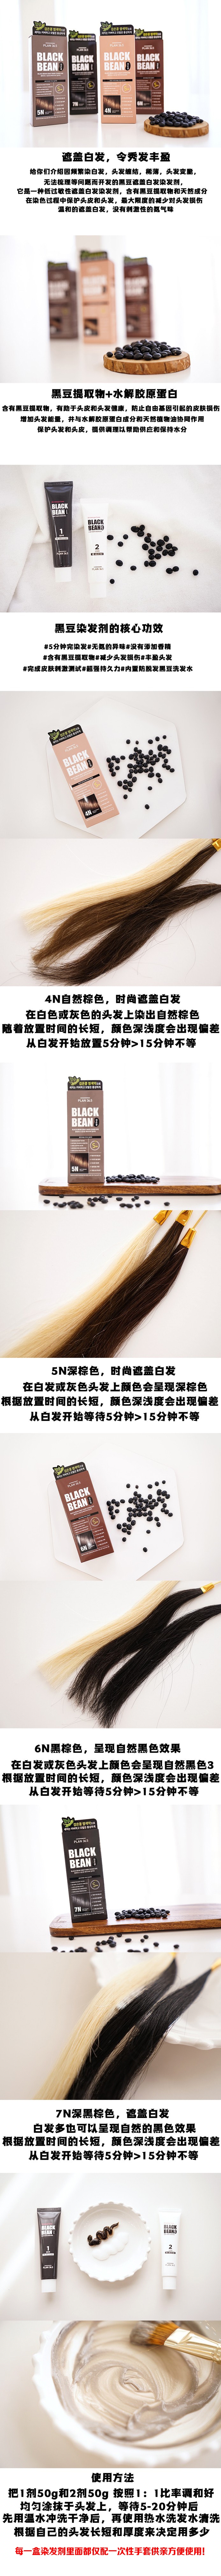 韩国 【黑豆染发】 Plan 36.5 黑豆 防脱发滋润染发剂 可染白发 #5N 自然棕